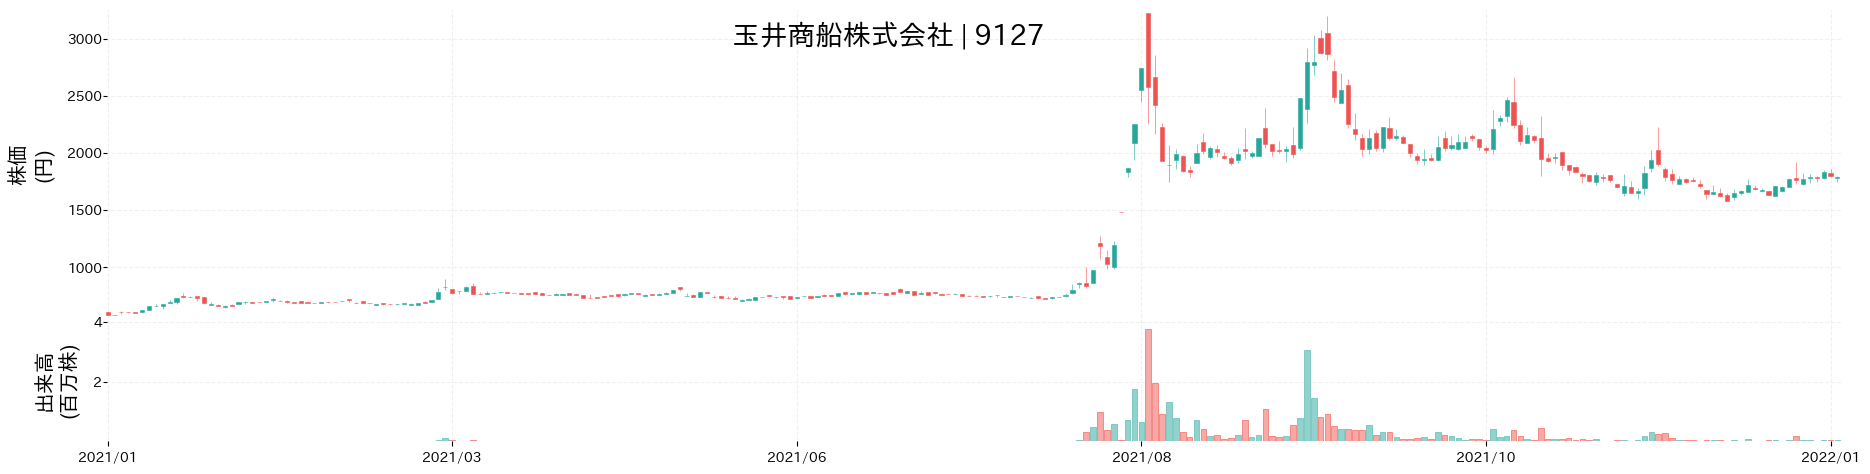 玉井商船の株価推移(2021)